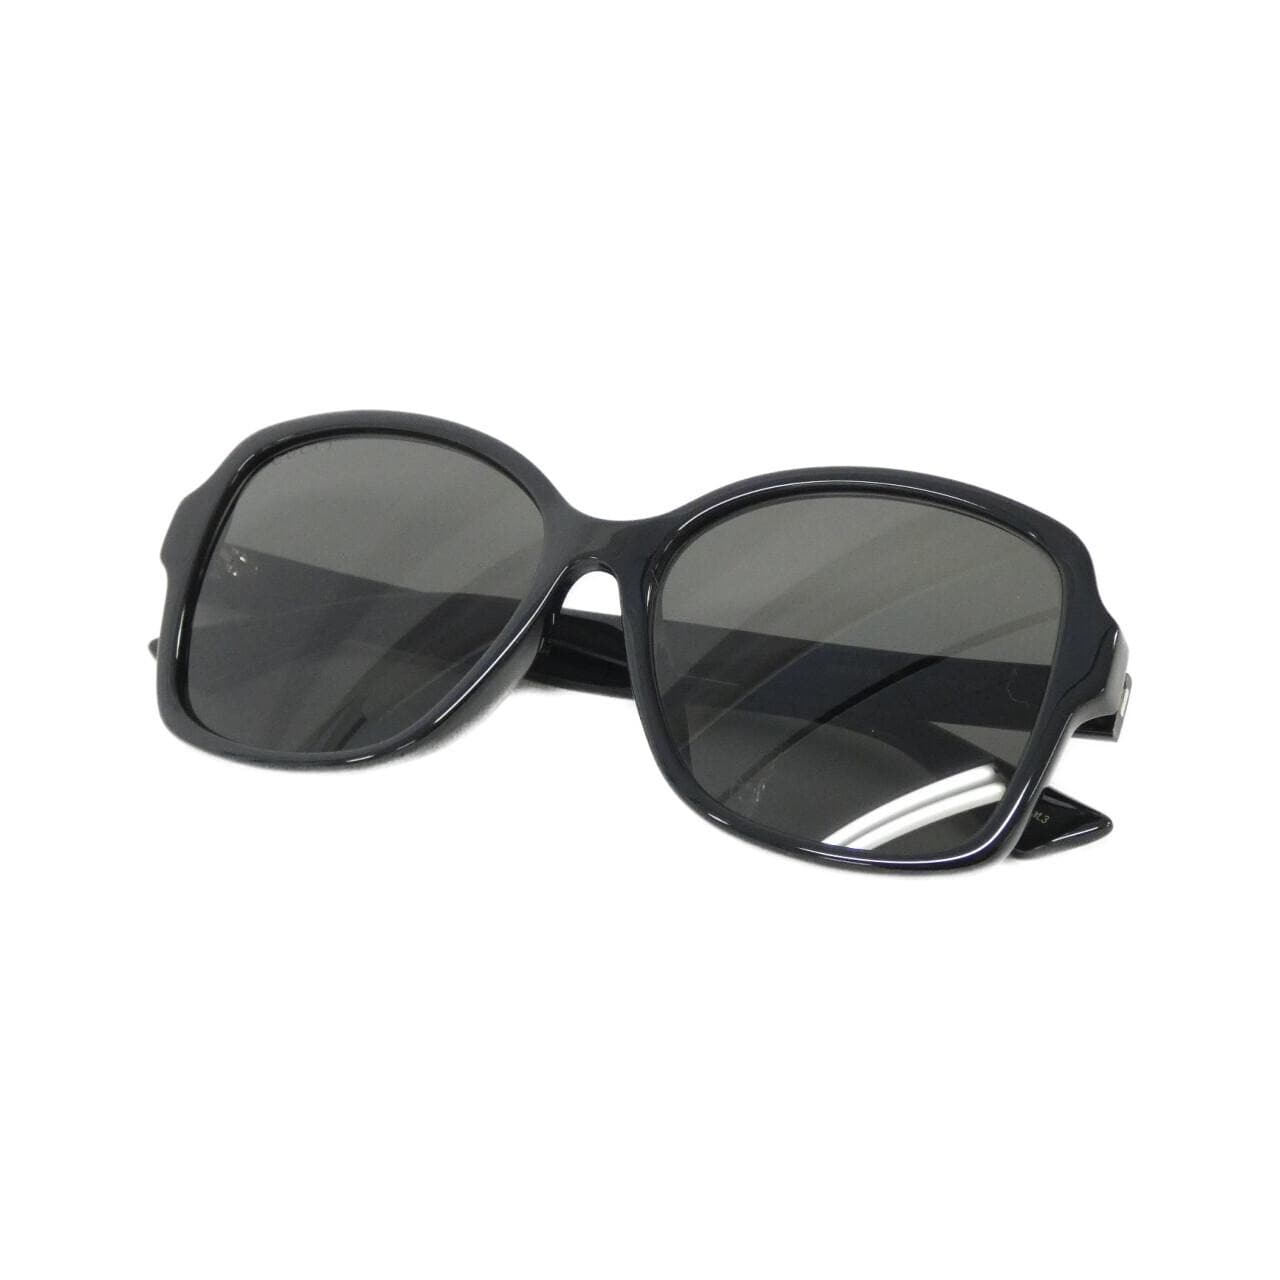 [BRAND NEW] Gucci 0765SA Sunglasses